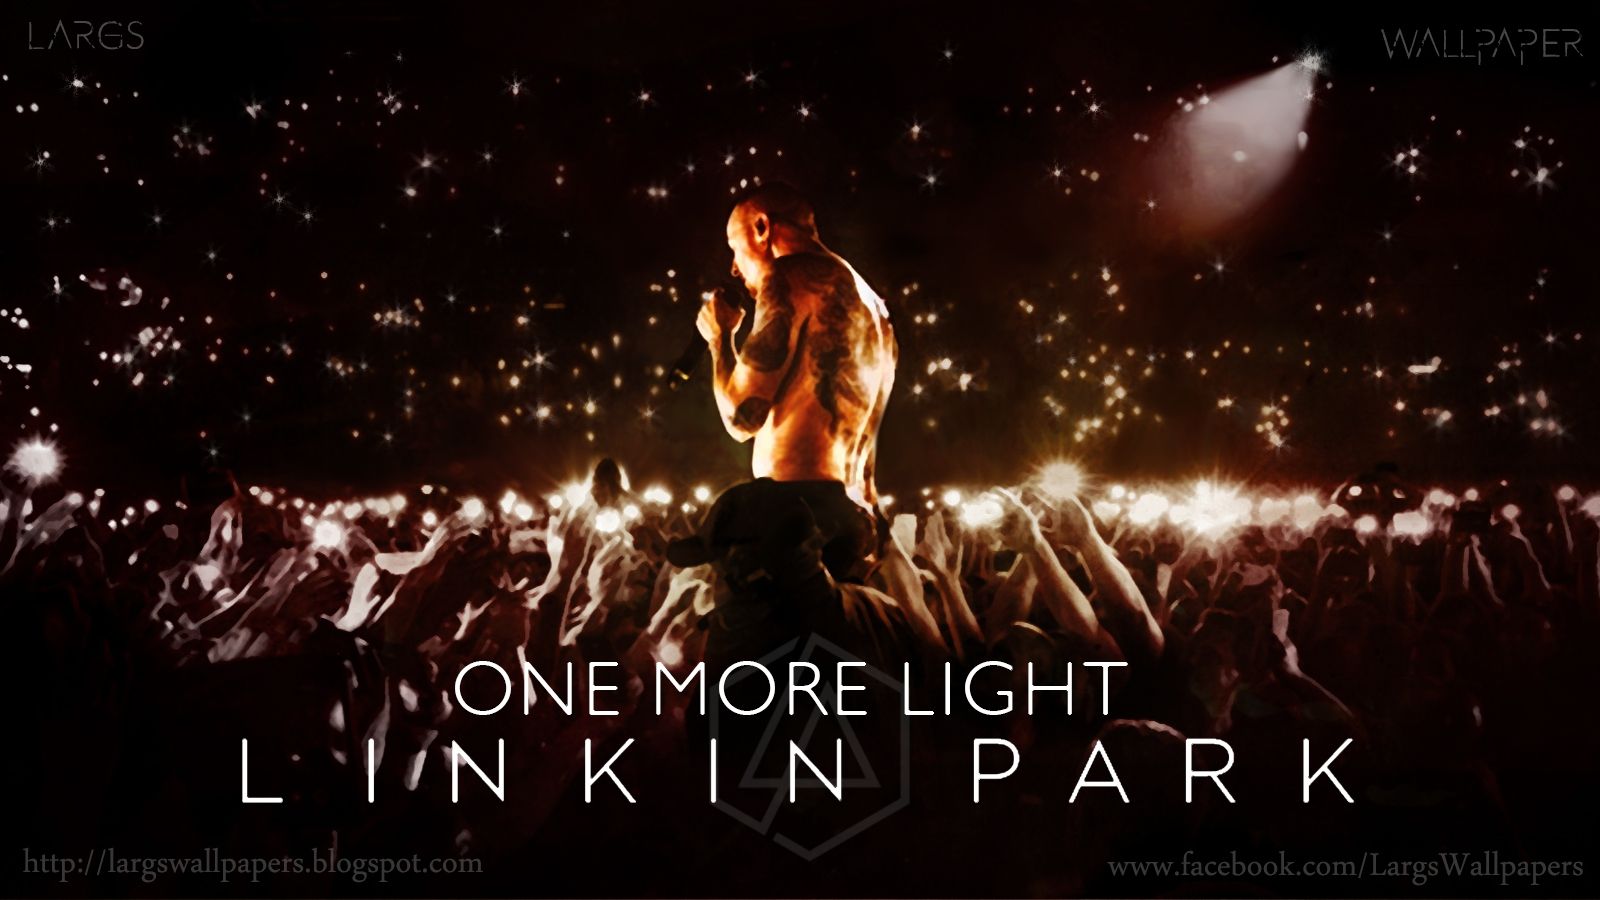 歌詞和訳 単語リスト付き One More Light Linkin Park すきままlanguage